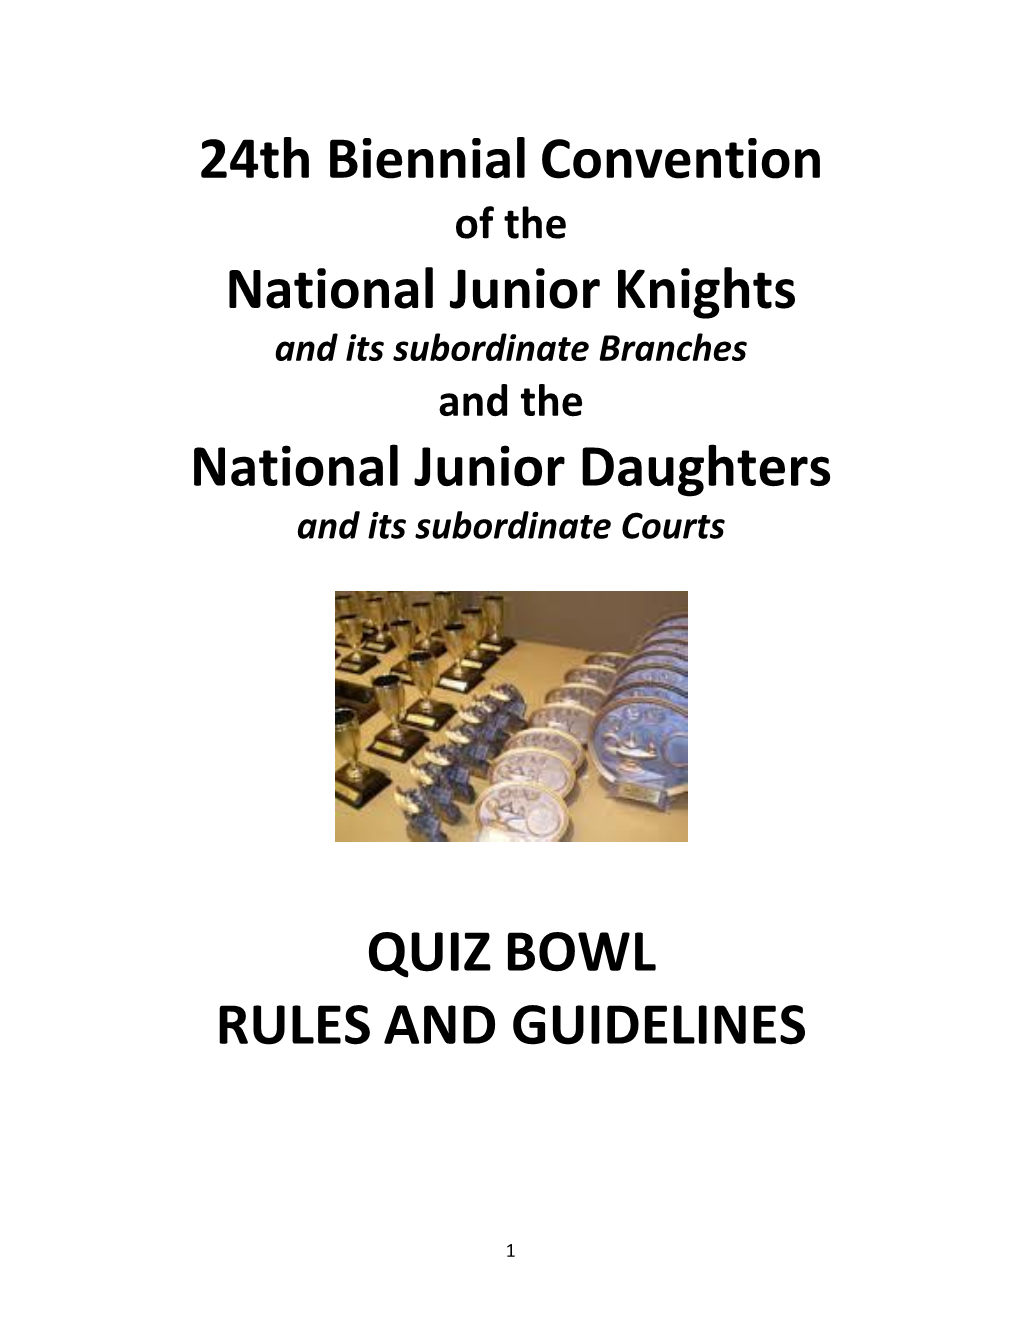 24Th Biennial Convention National Junior